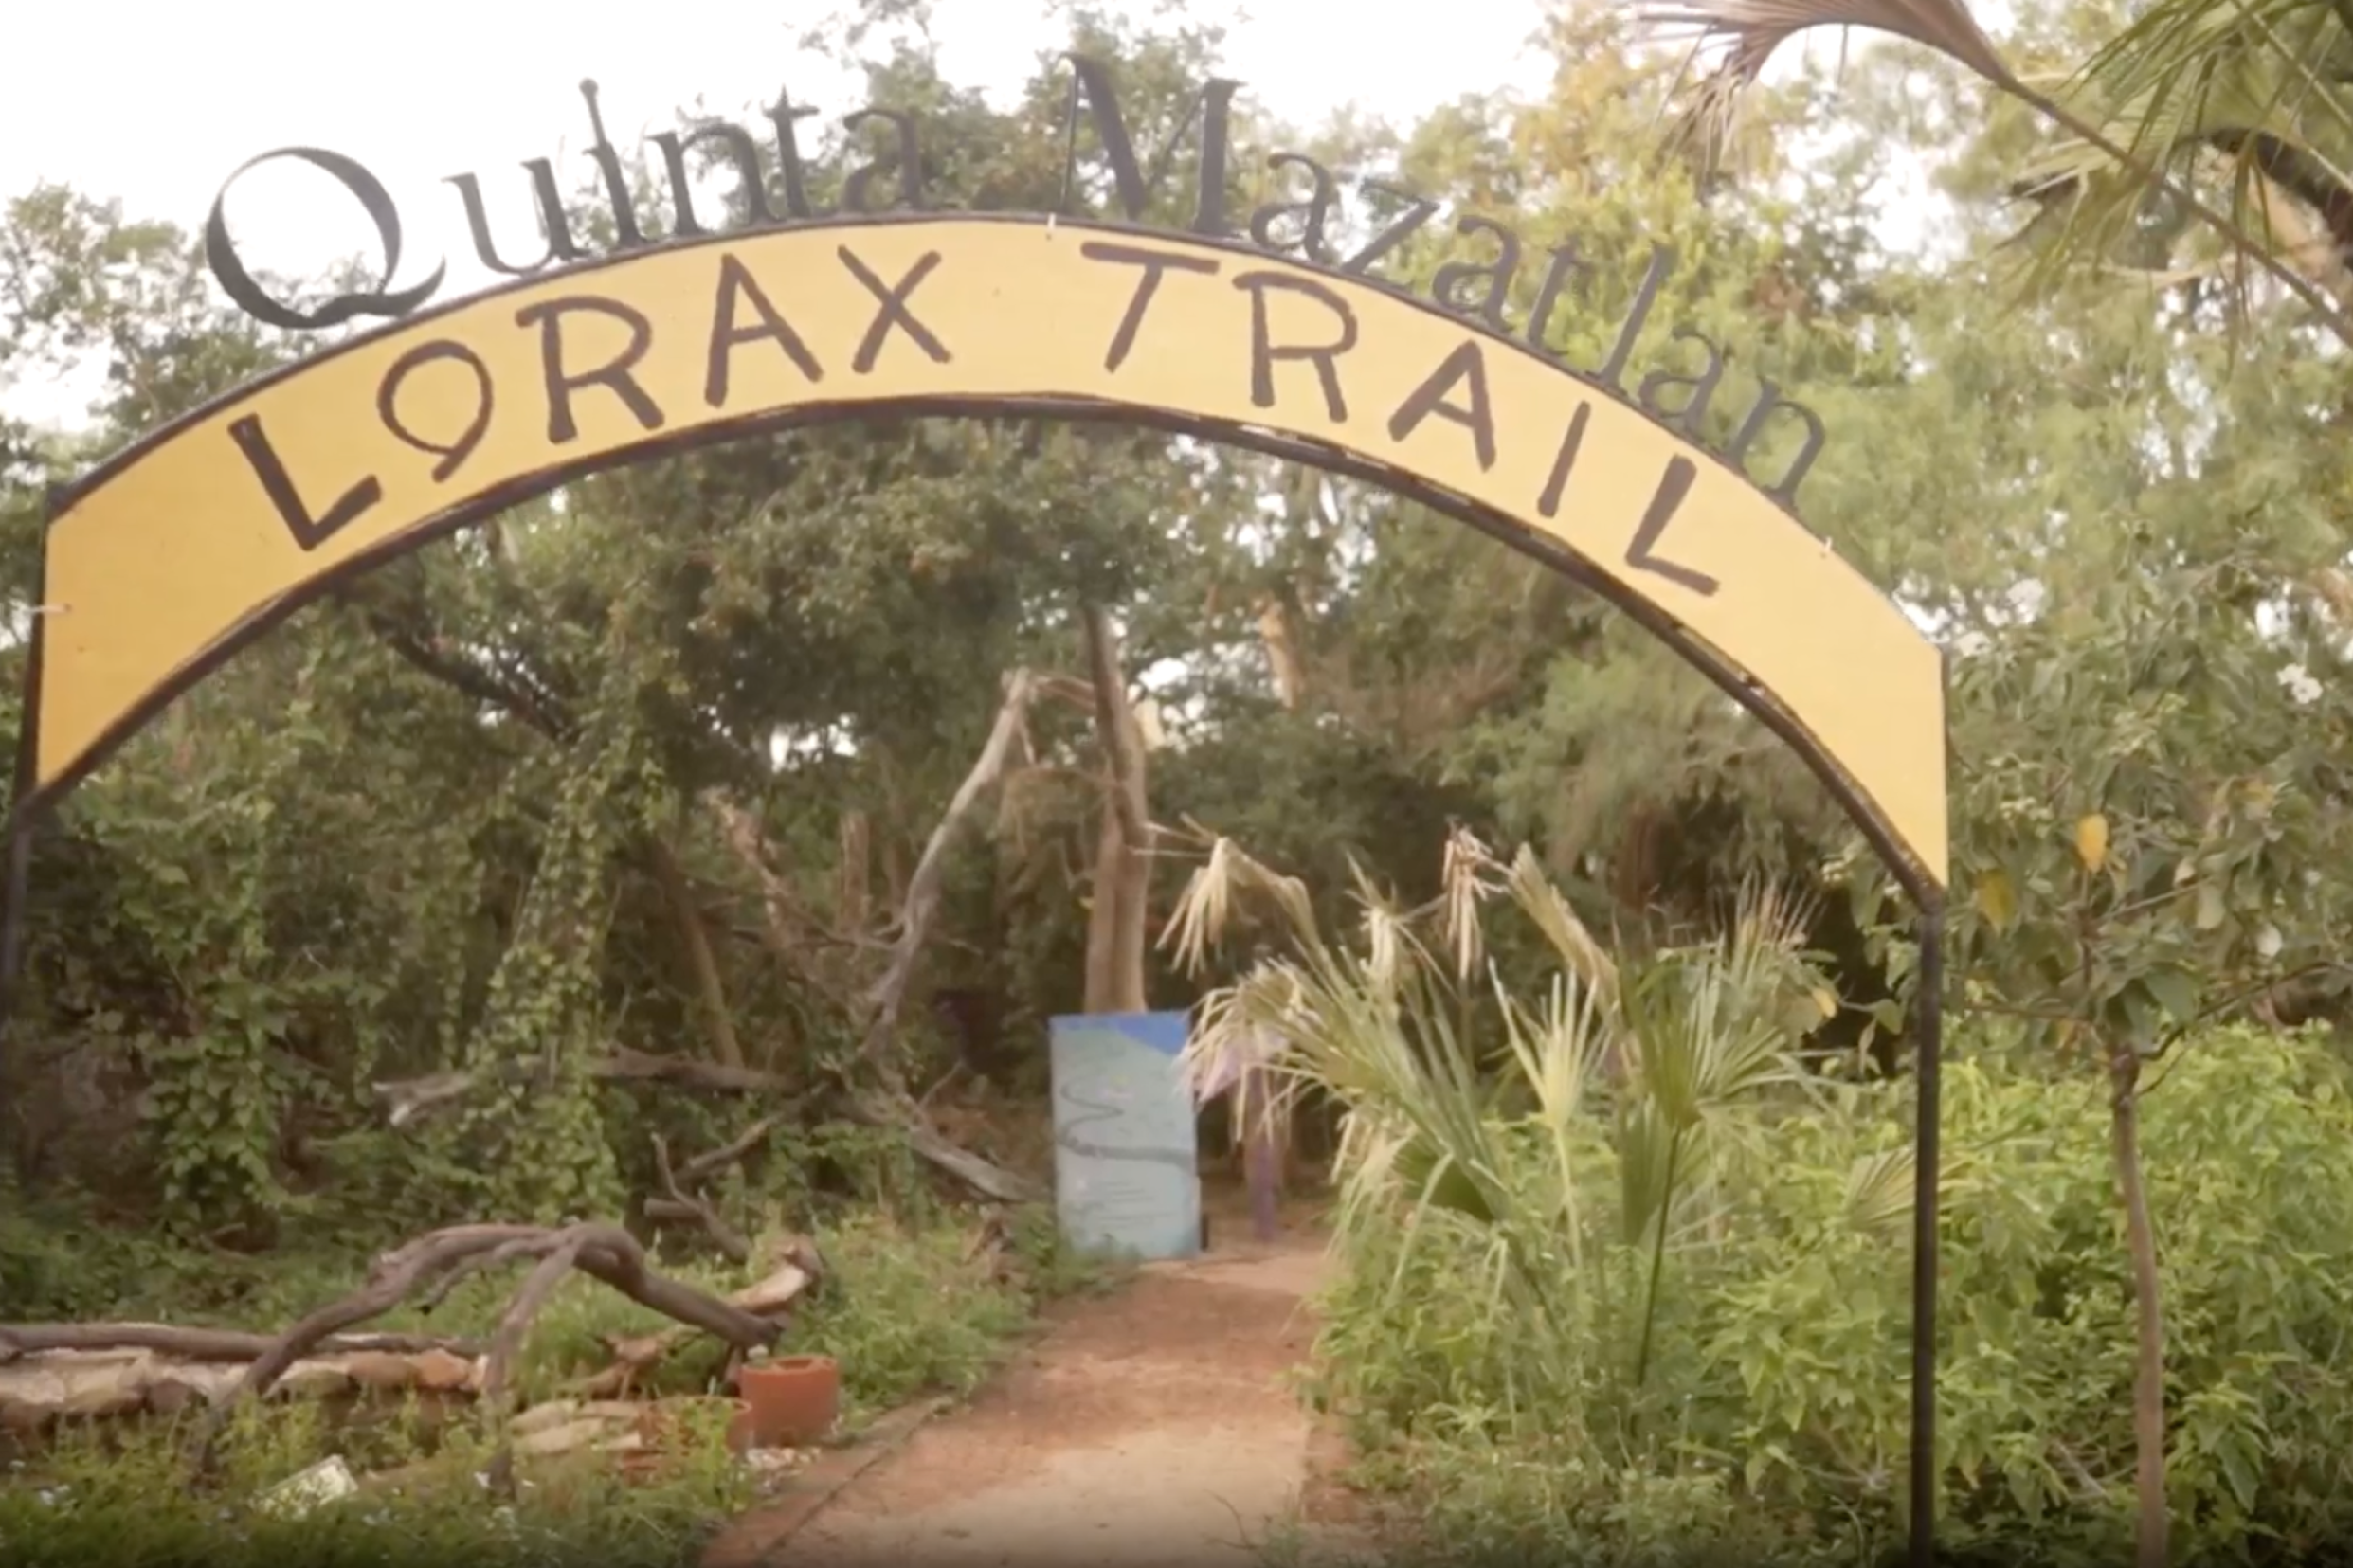 Lorax Trail sign